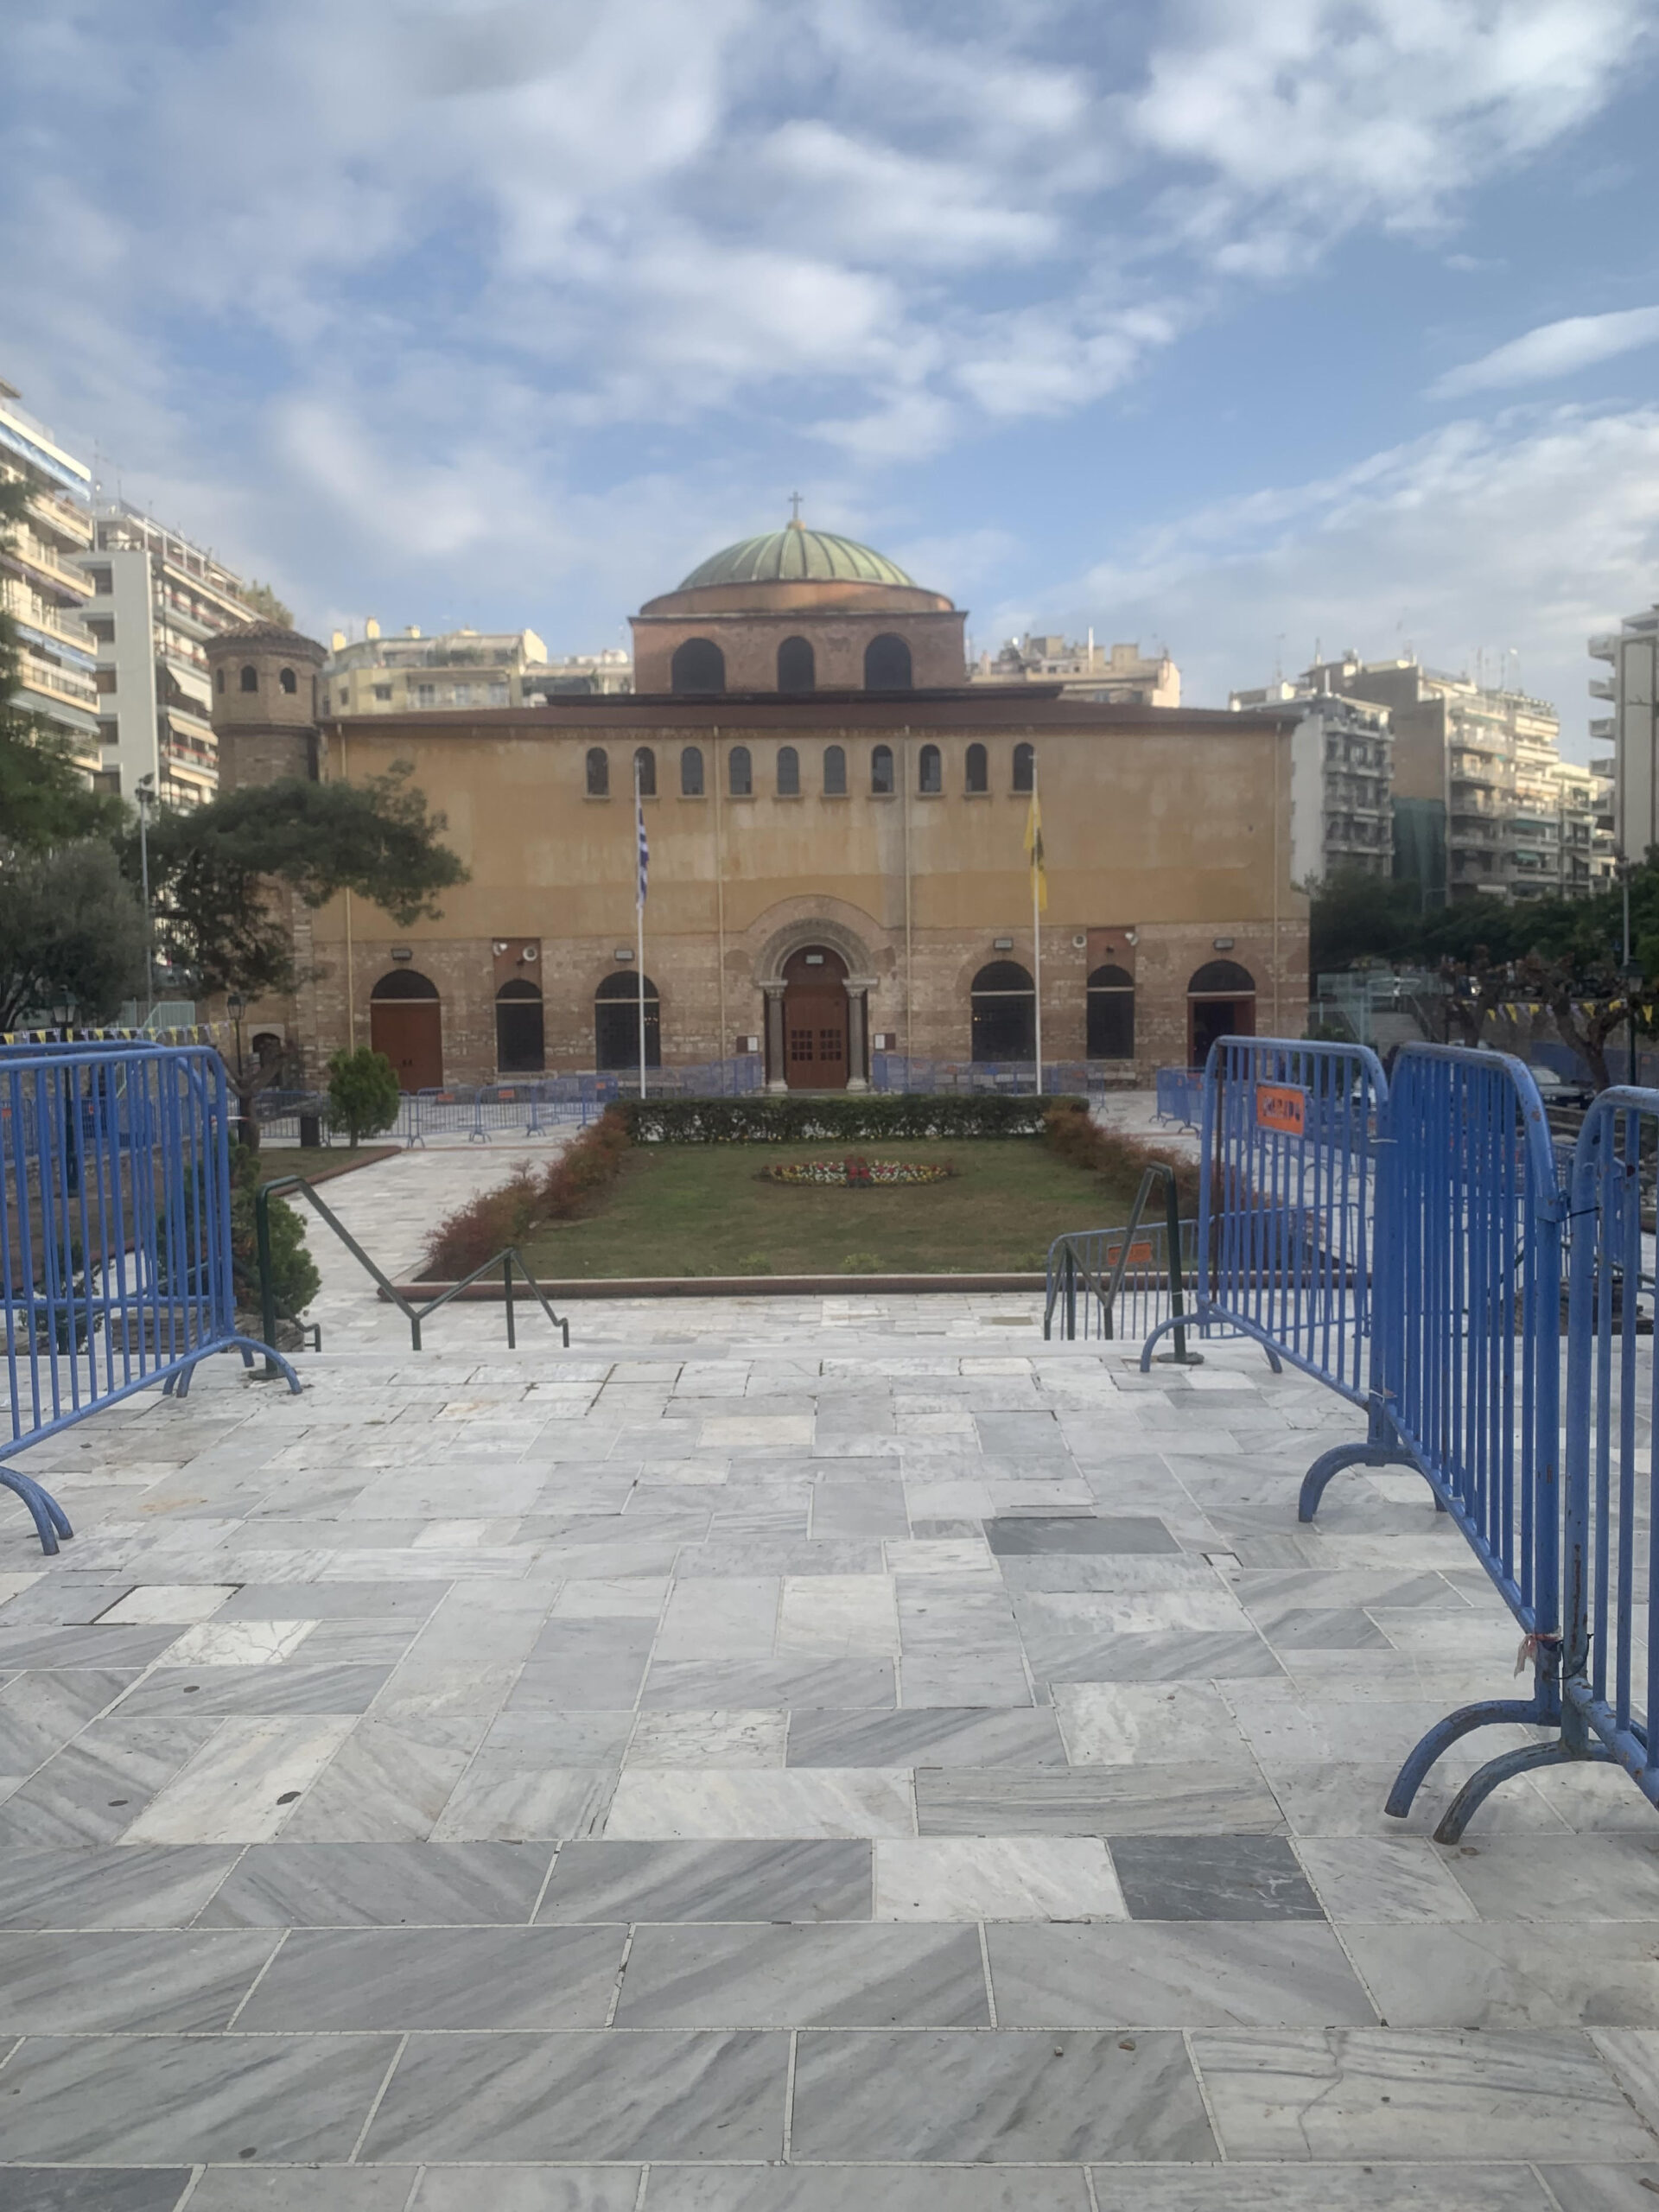 Στην τελική ευθεία οι προετοιμασίες για την ενθρόνιση του νέου Μητροπολίτη Θεσσαλονίκης Φιλόθεου